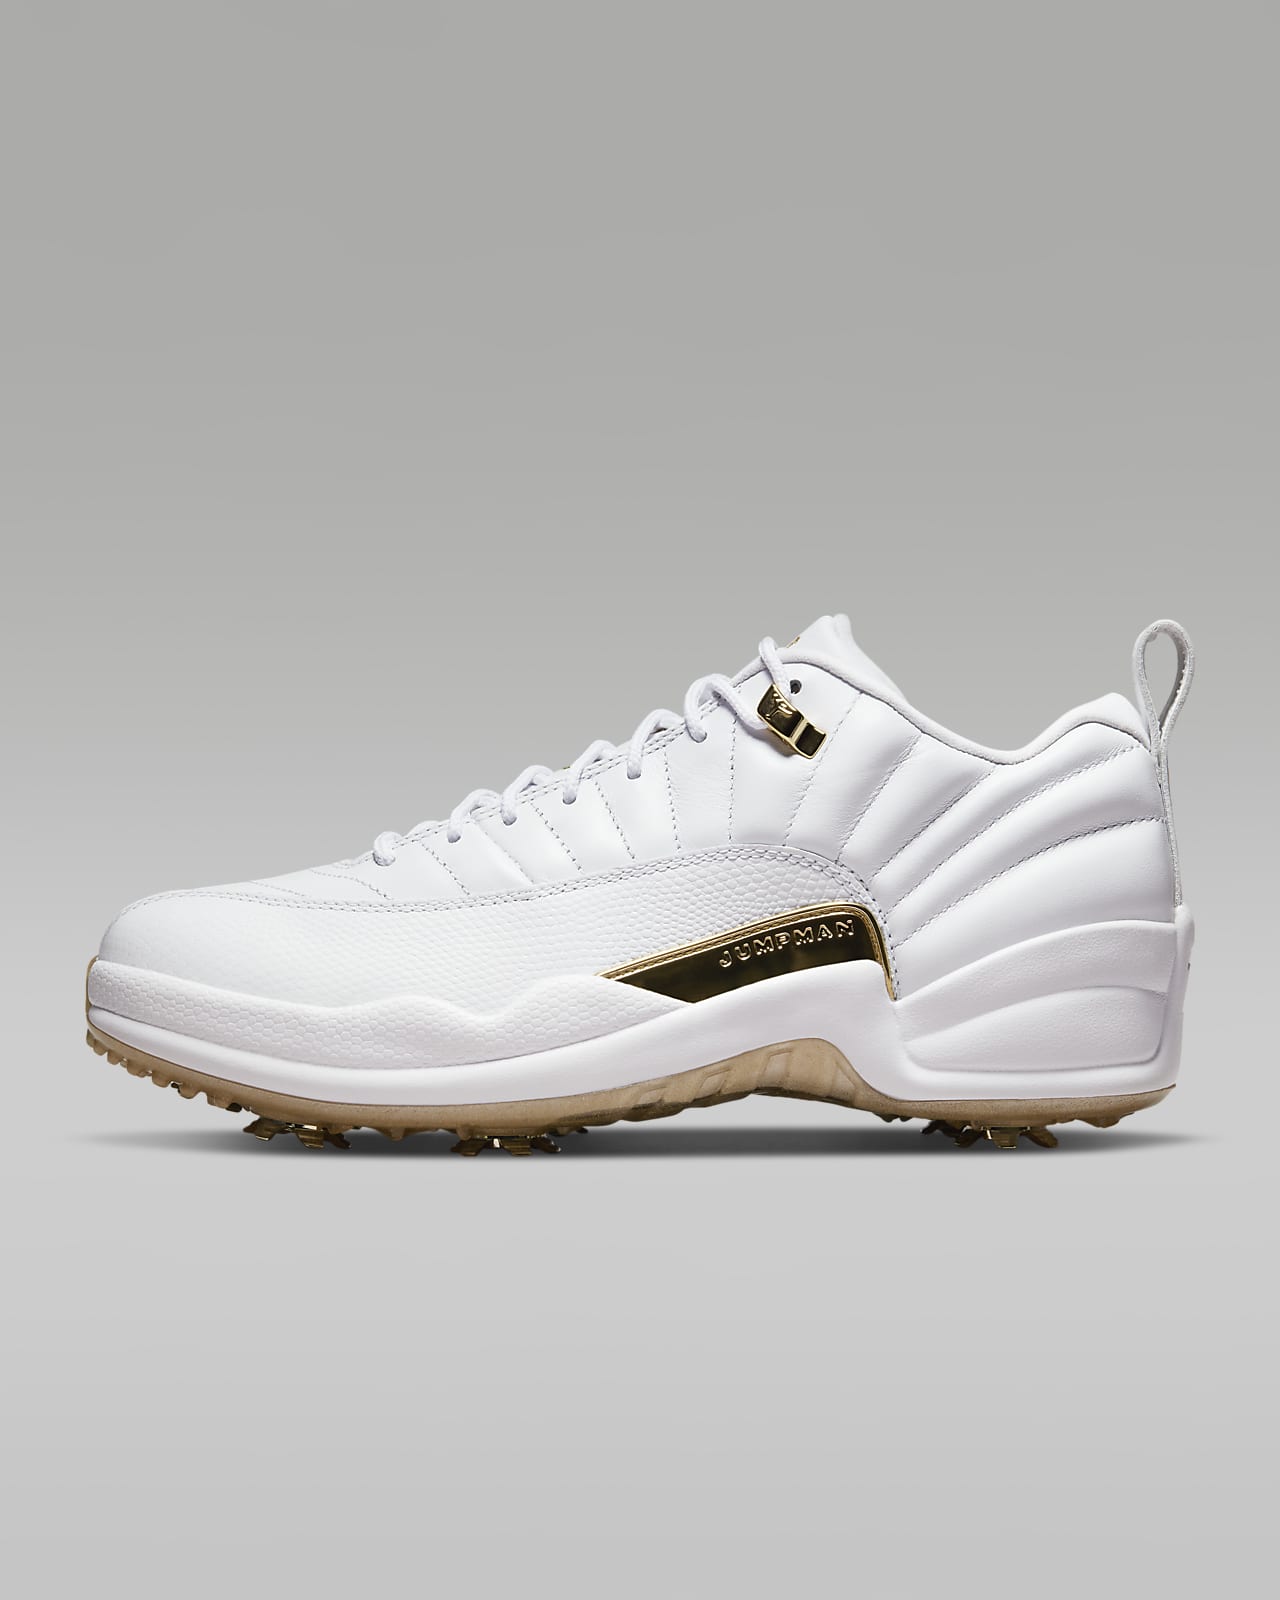 特価在庫Nike Golf Air Jordan 12 White Gold 29cm シューズ